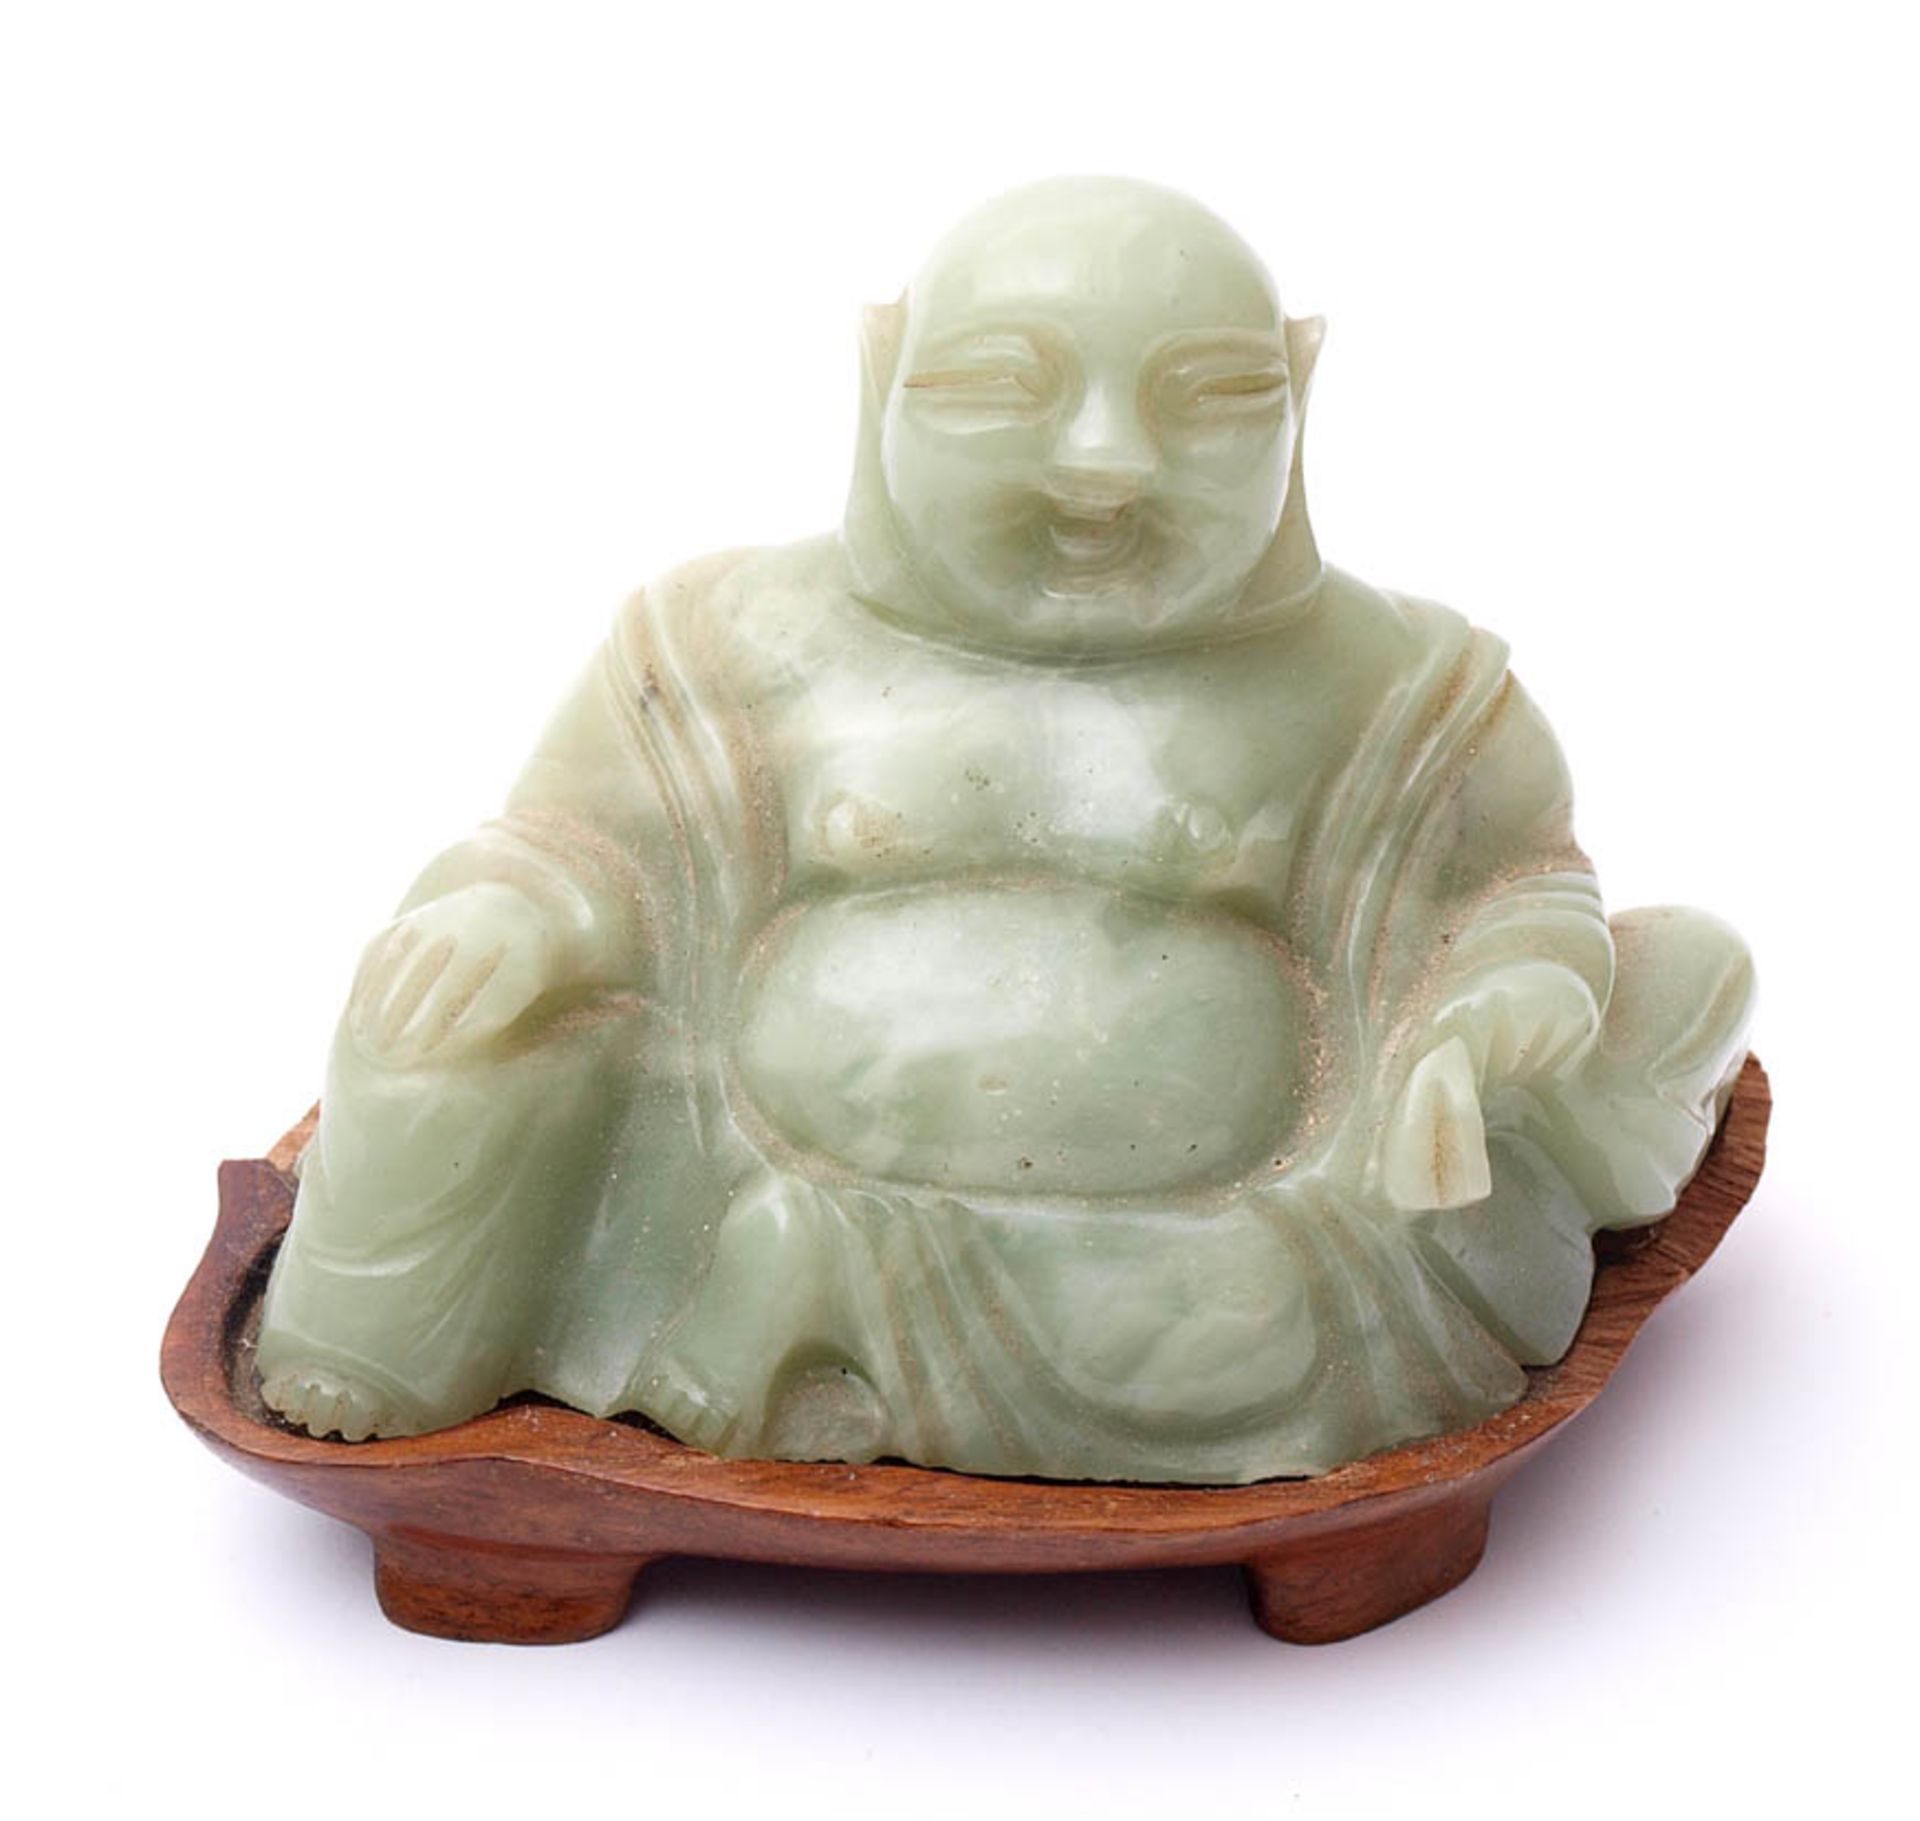 JadefigurLachender Buddha in Mudra auf passendem Holzsockel. Hellgrüne, gefleckte Jade. H.7,5cm ohne